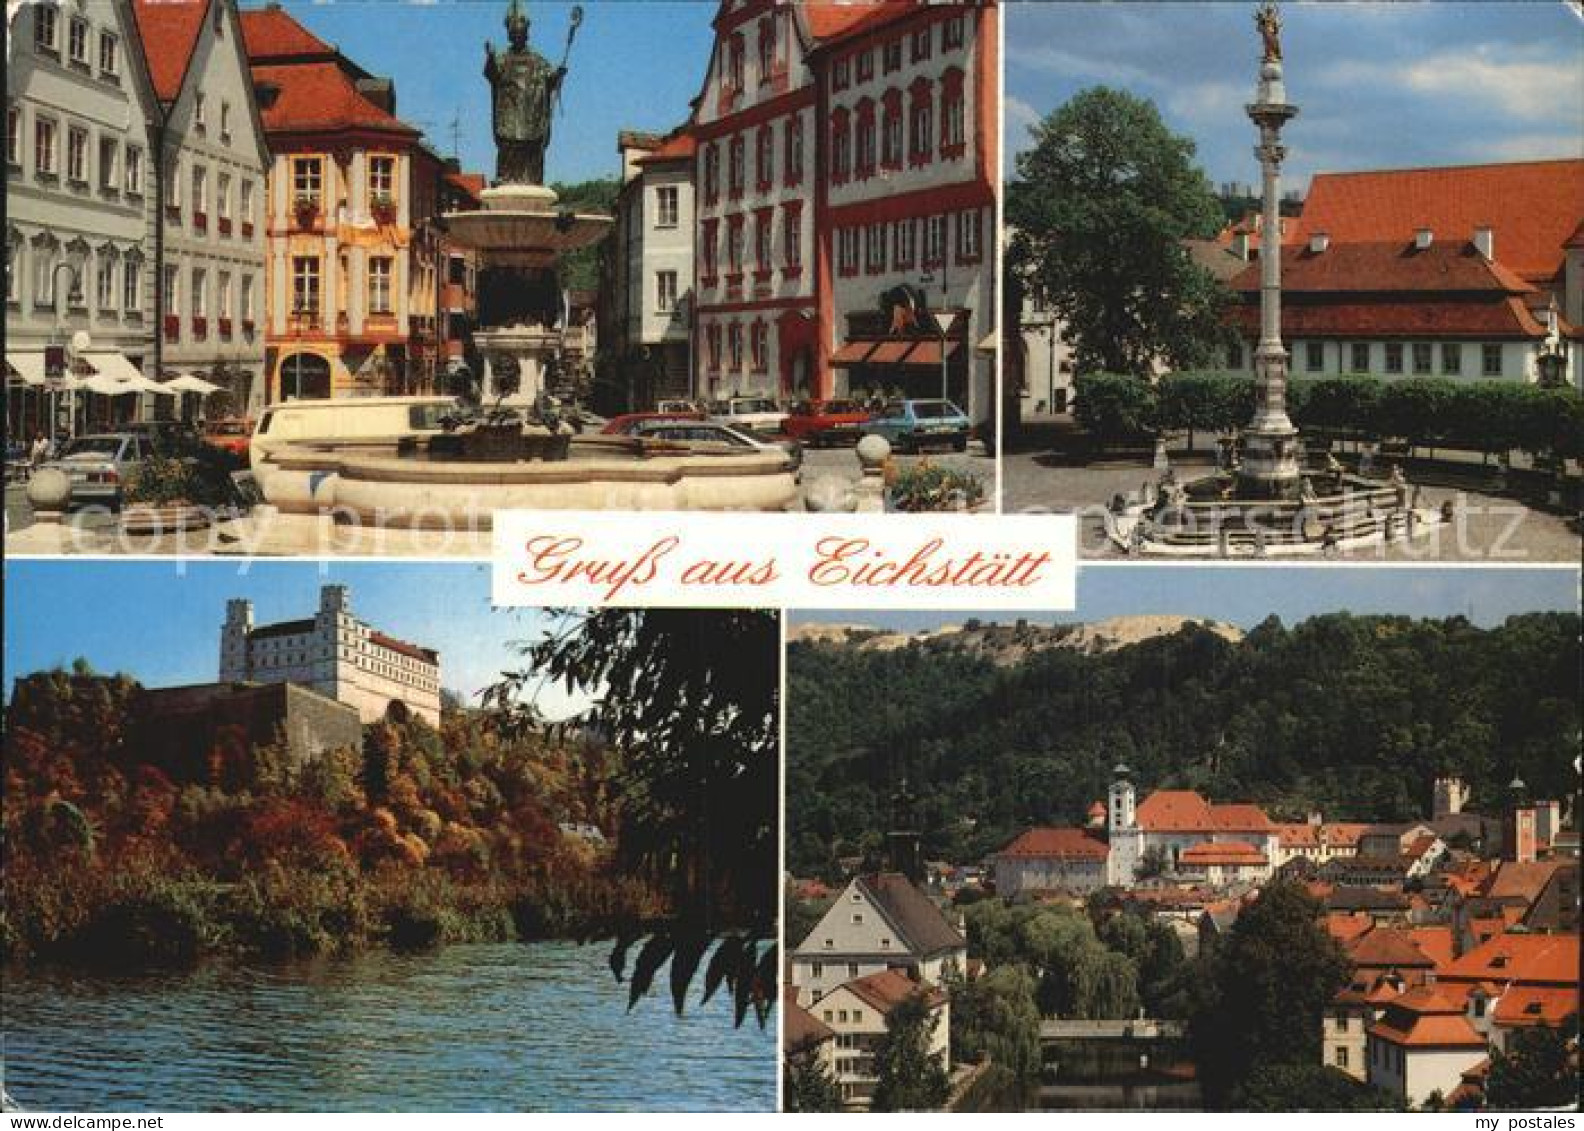 72525250 Eichstaett Oberbayern Markt Brunnen Saeule Schloss Teilansicht Blumenbe - Eichstaett